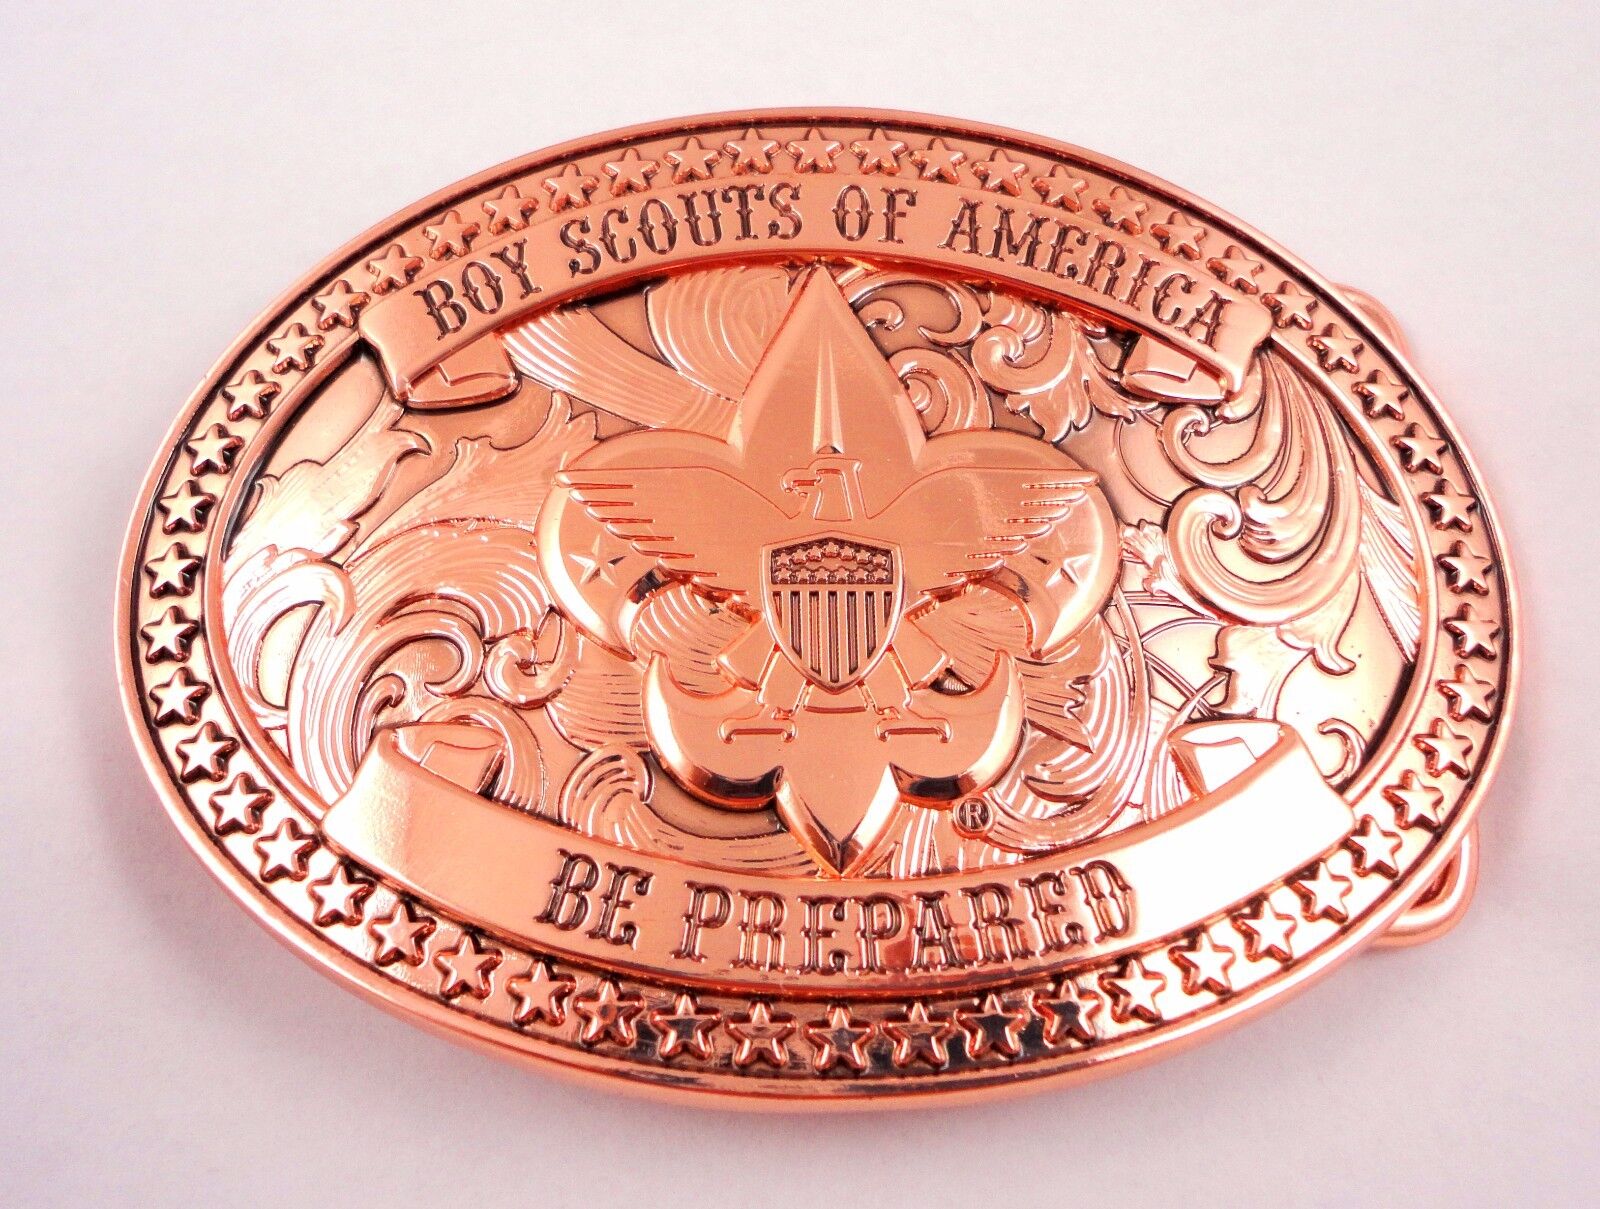 Boy Scouts of America Beautiful Copper BSA Belt Buckle - Great Eagle Gift Idea